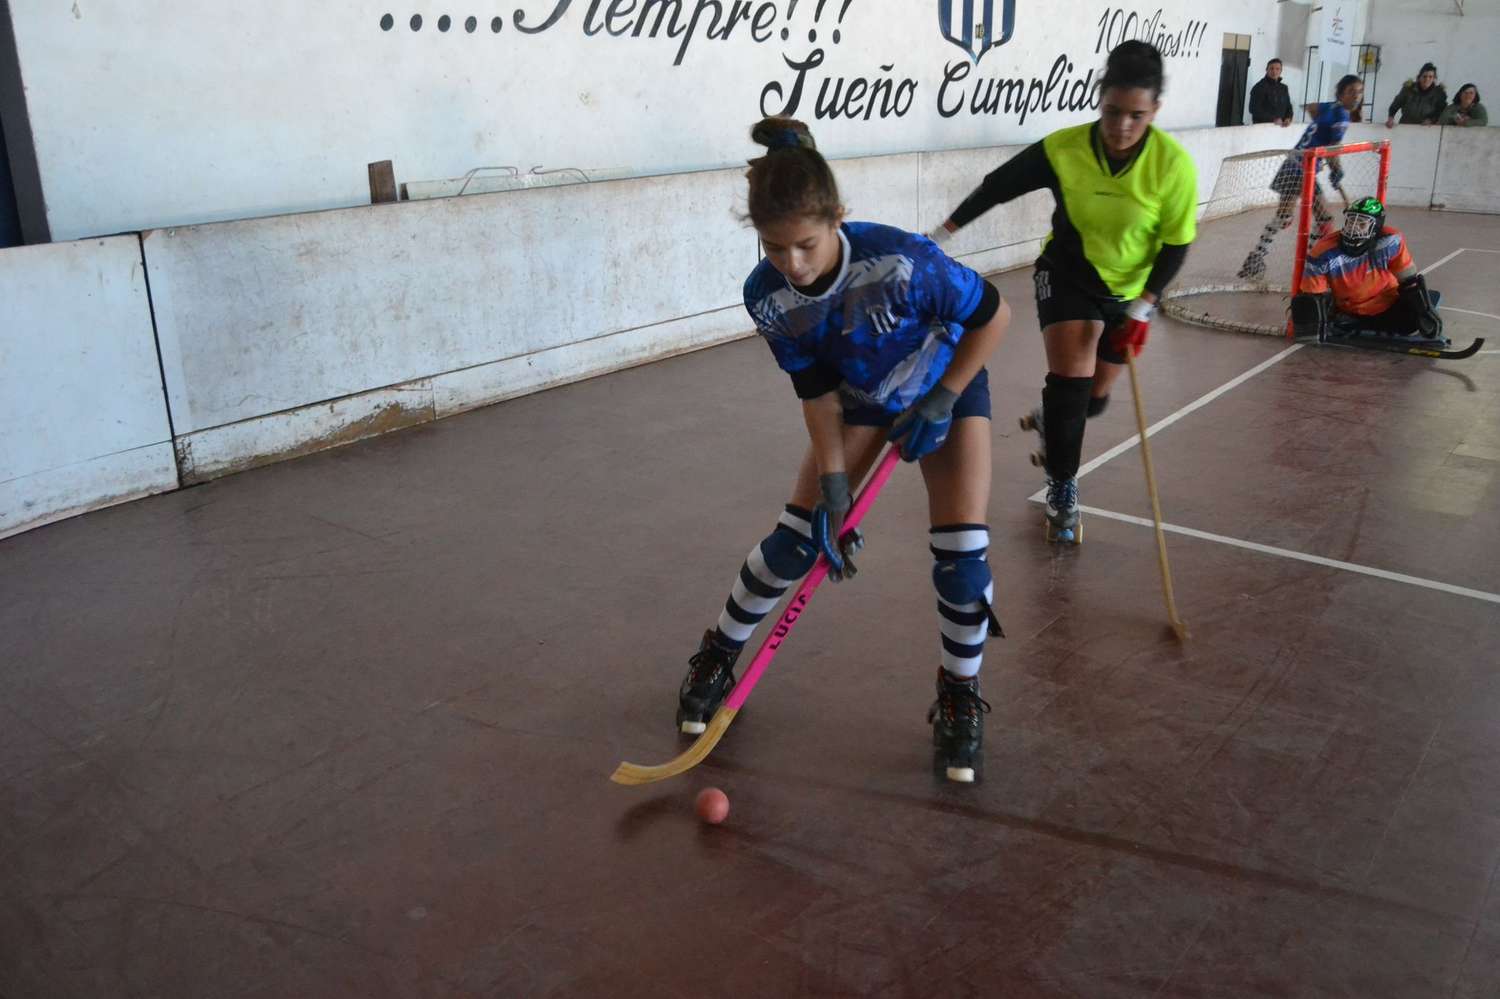 Continua este sábado el hockey sobre patines en Sociedad Sportiva